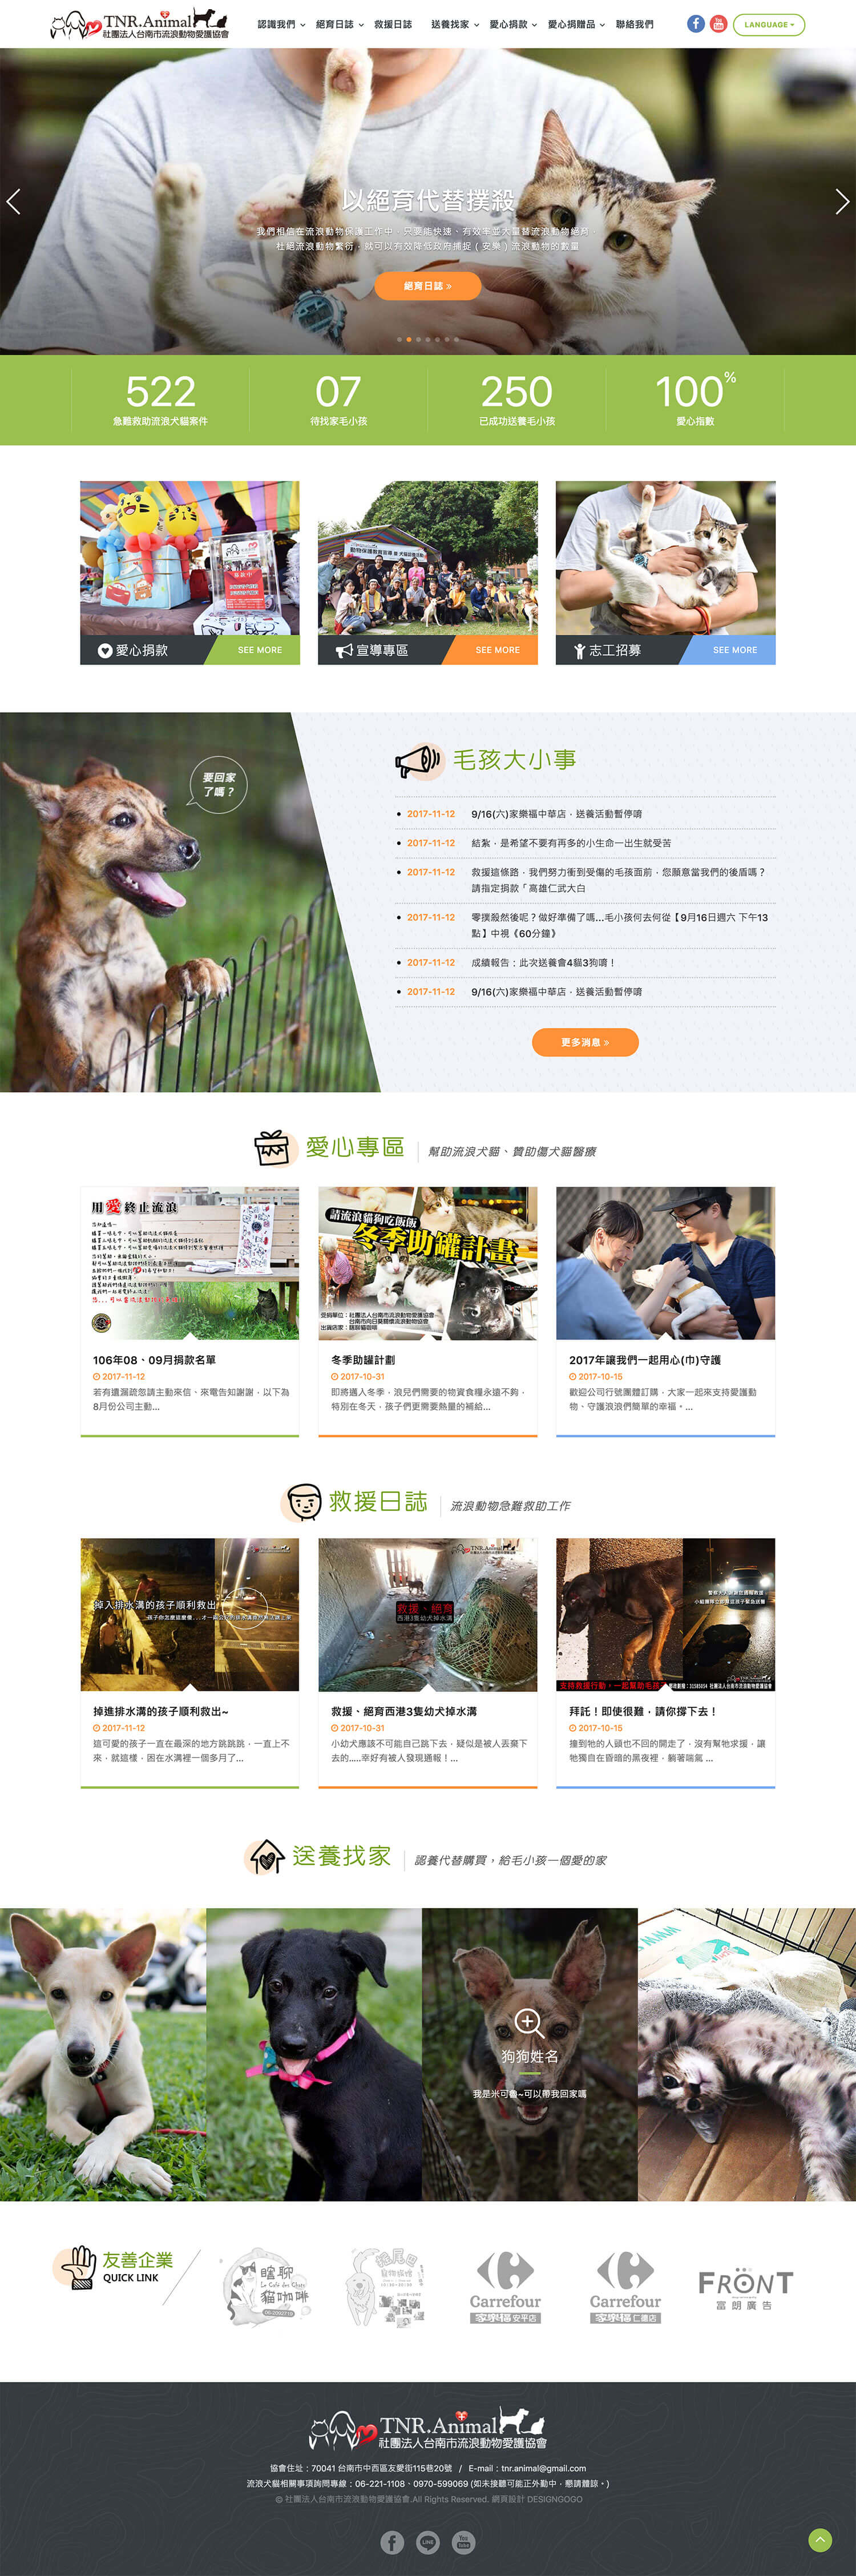 台南市流浪動物愛護協會 網頁設計